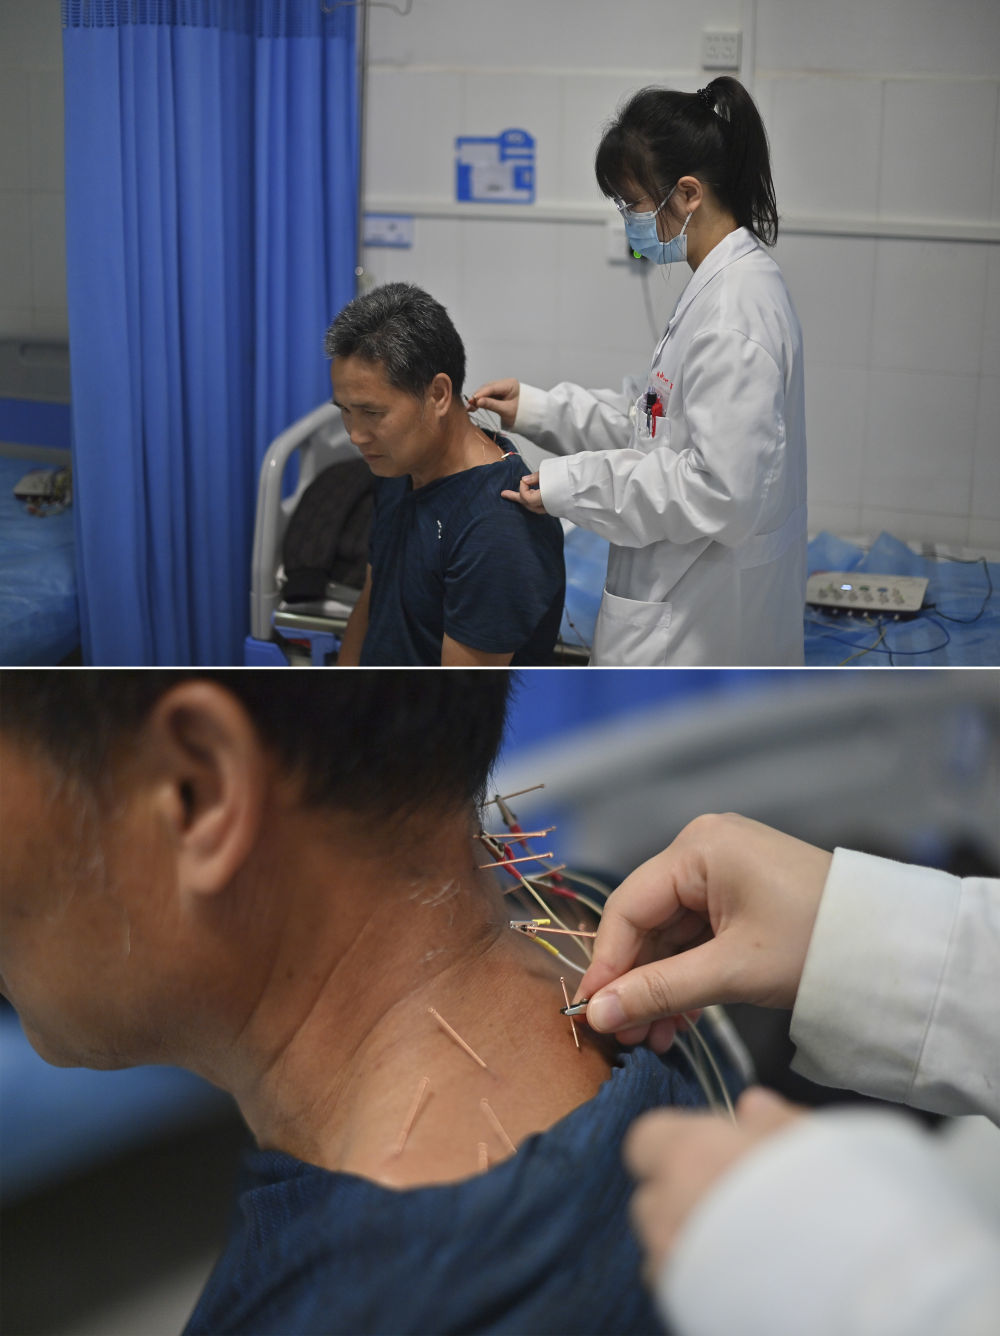 在广西柳州市融安县泗顶镇卫生院，医生蓝天彩为村民进行针灸治疗（4月29日摄）。今年23岁的蓝天彩，大学毕业后选择到乡镇医院工作。